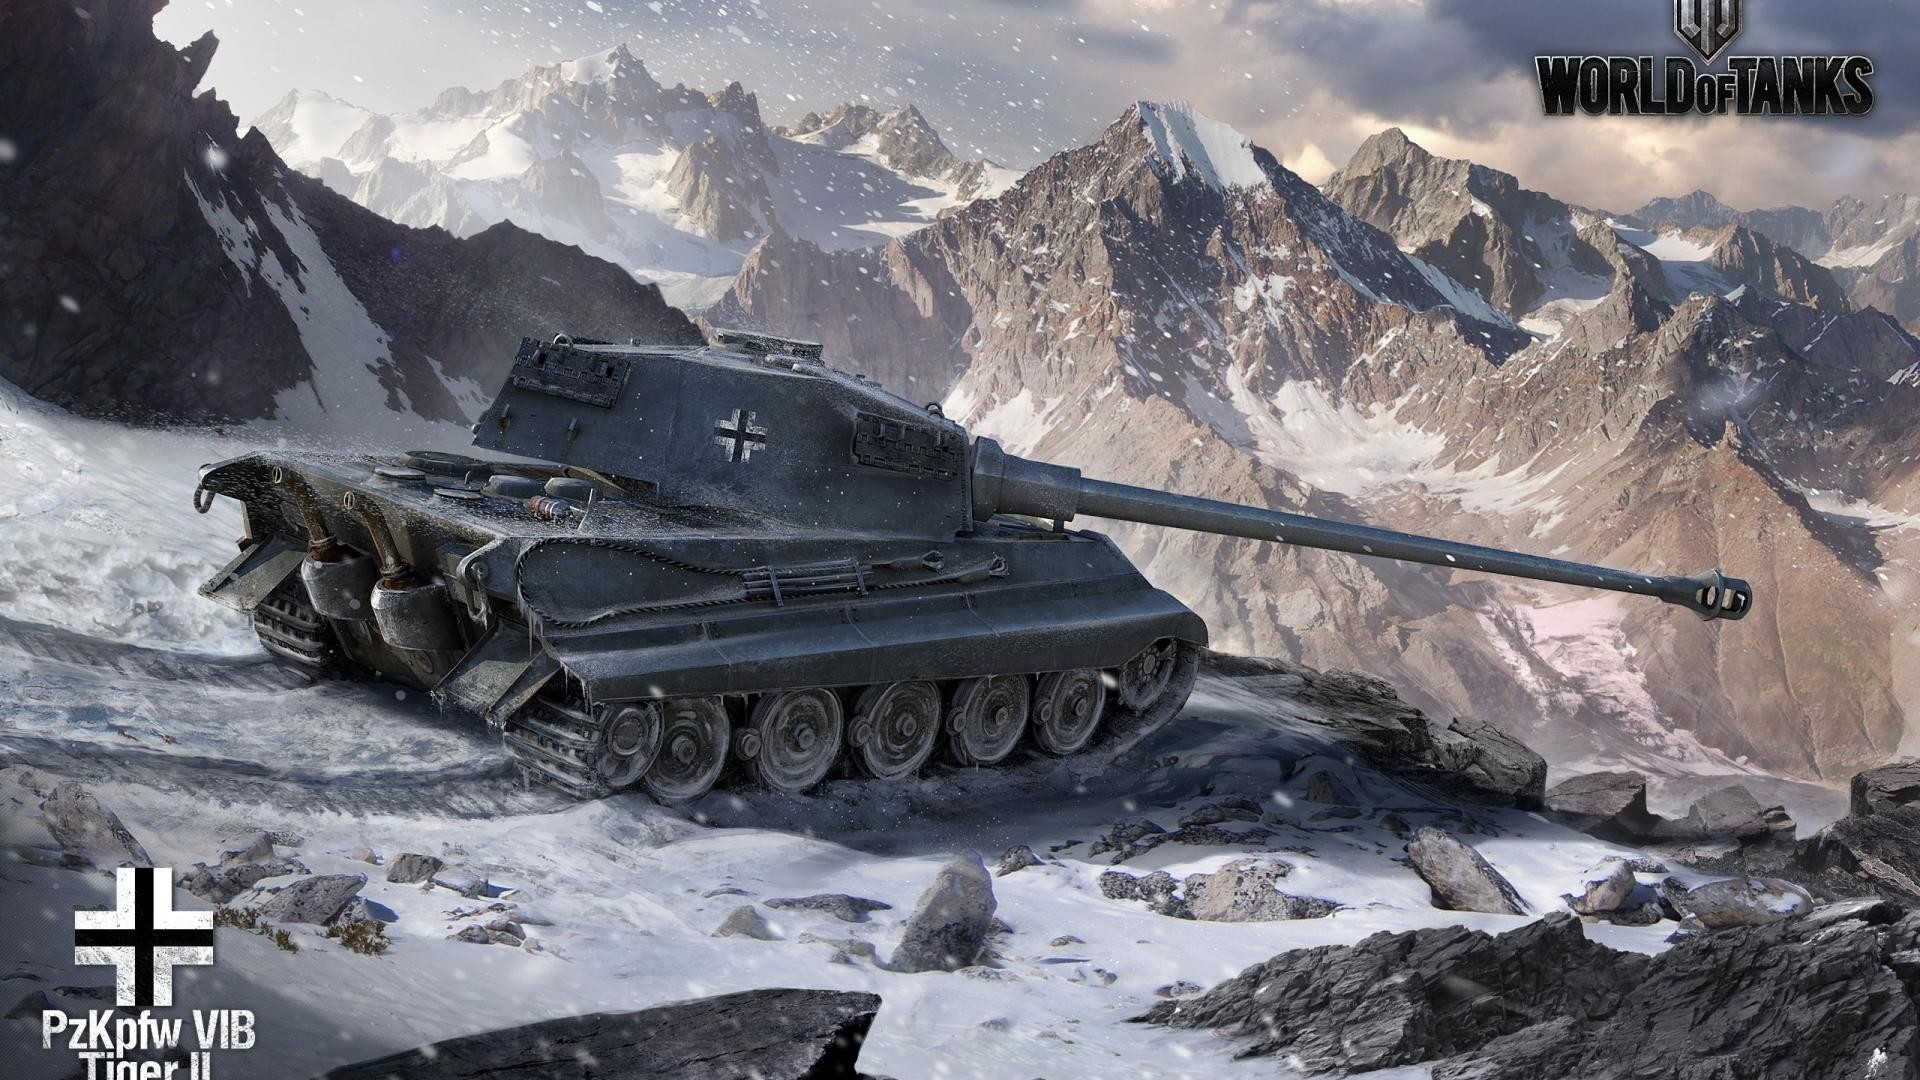 1920x1080 winter-world-of-tanks-tiger-ii-pzkpfw-vib--27410.jpg (1920Ã1080) |  Die Wehrmacht und Ihre Fahrzeuge | Pinterest | Hd wallpaper